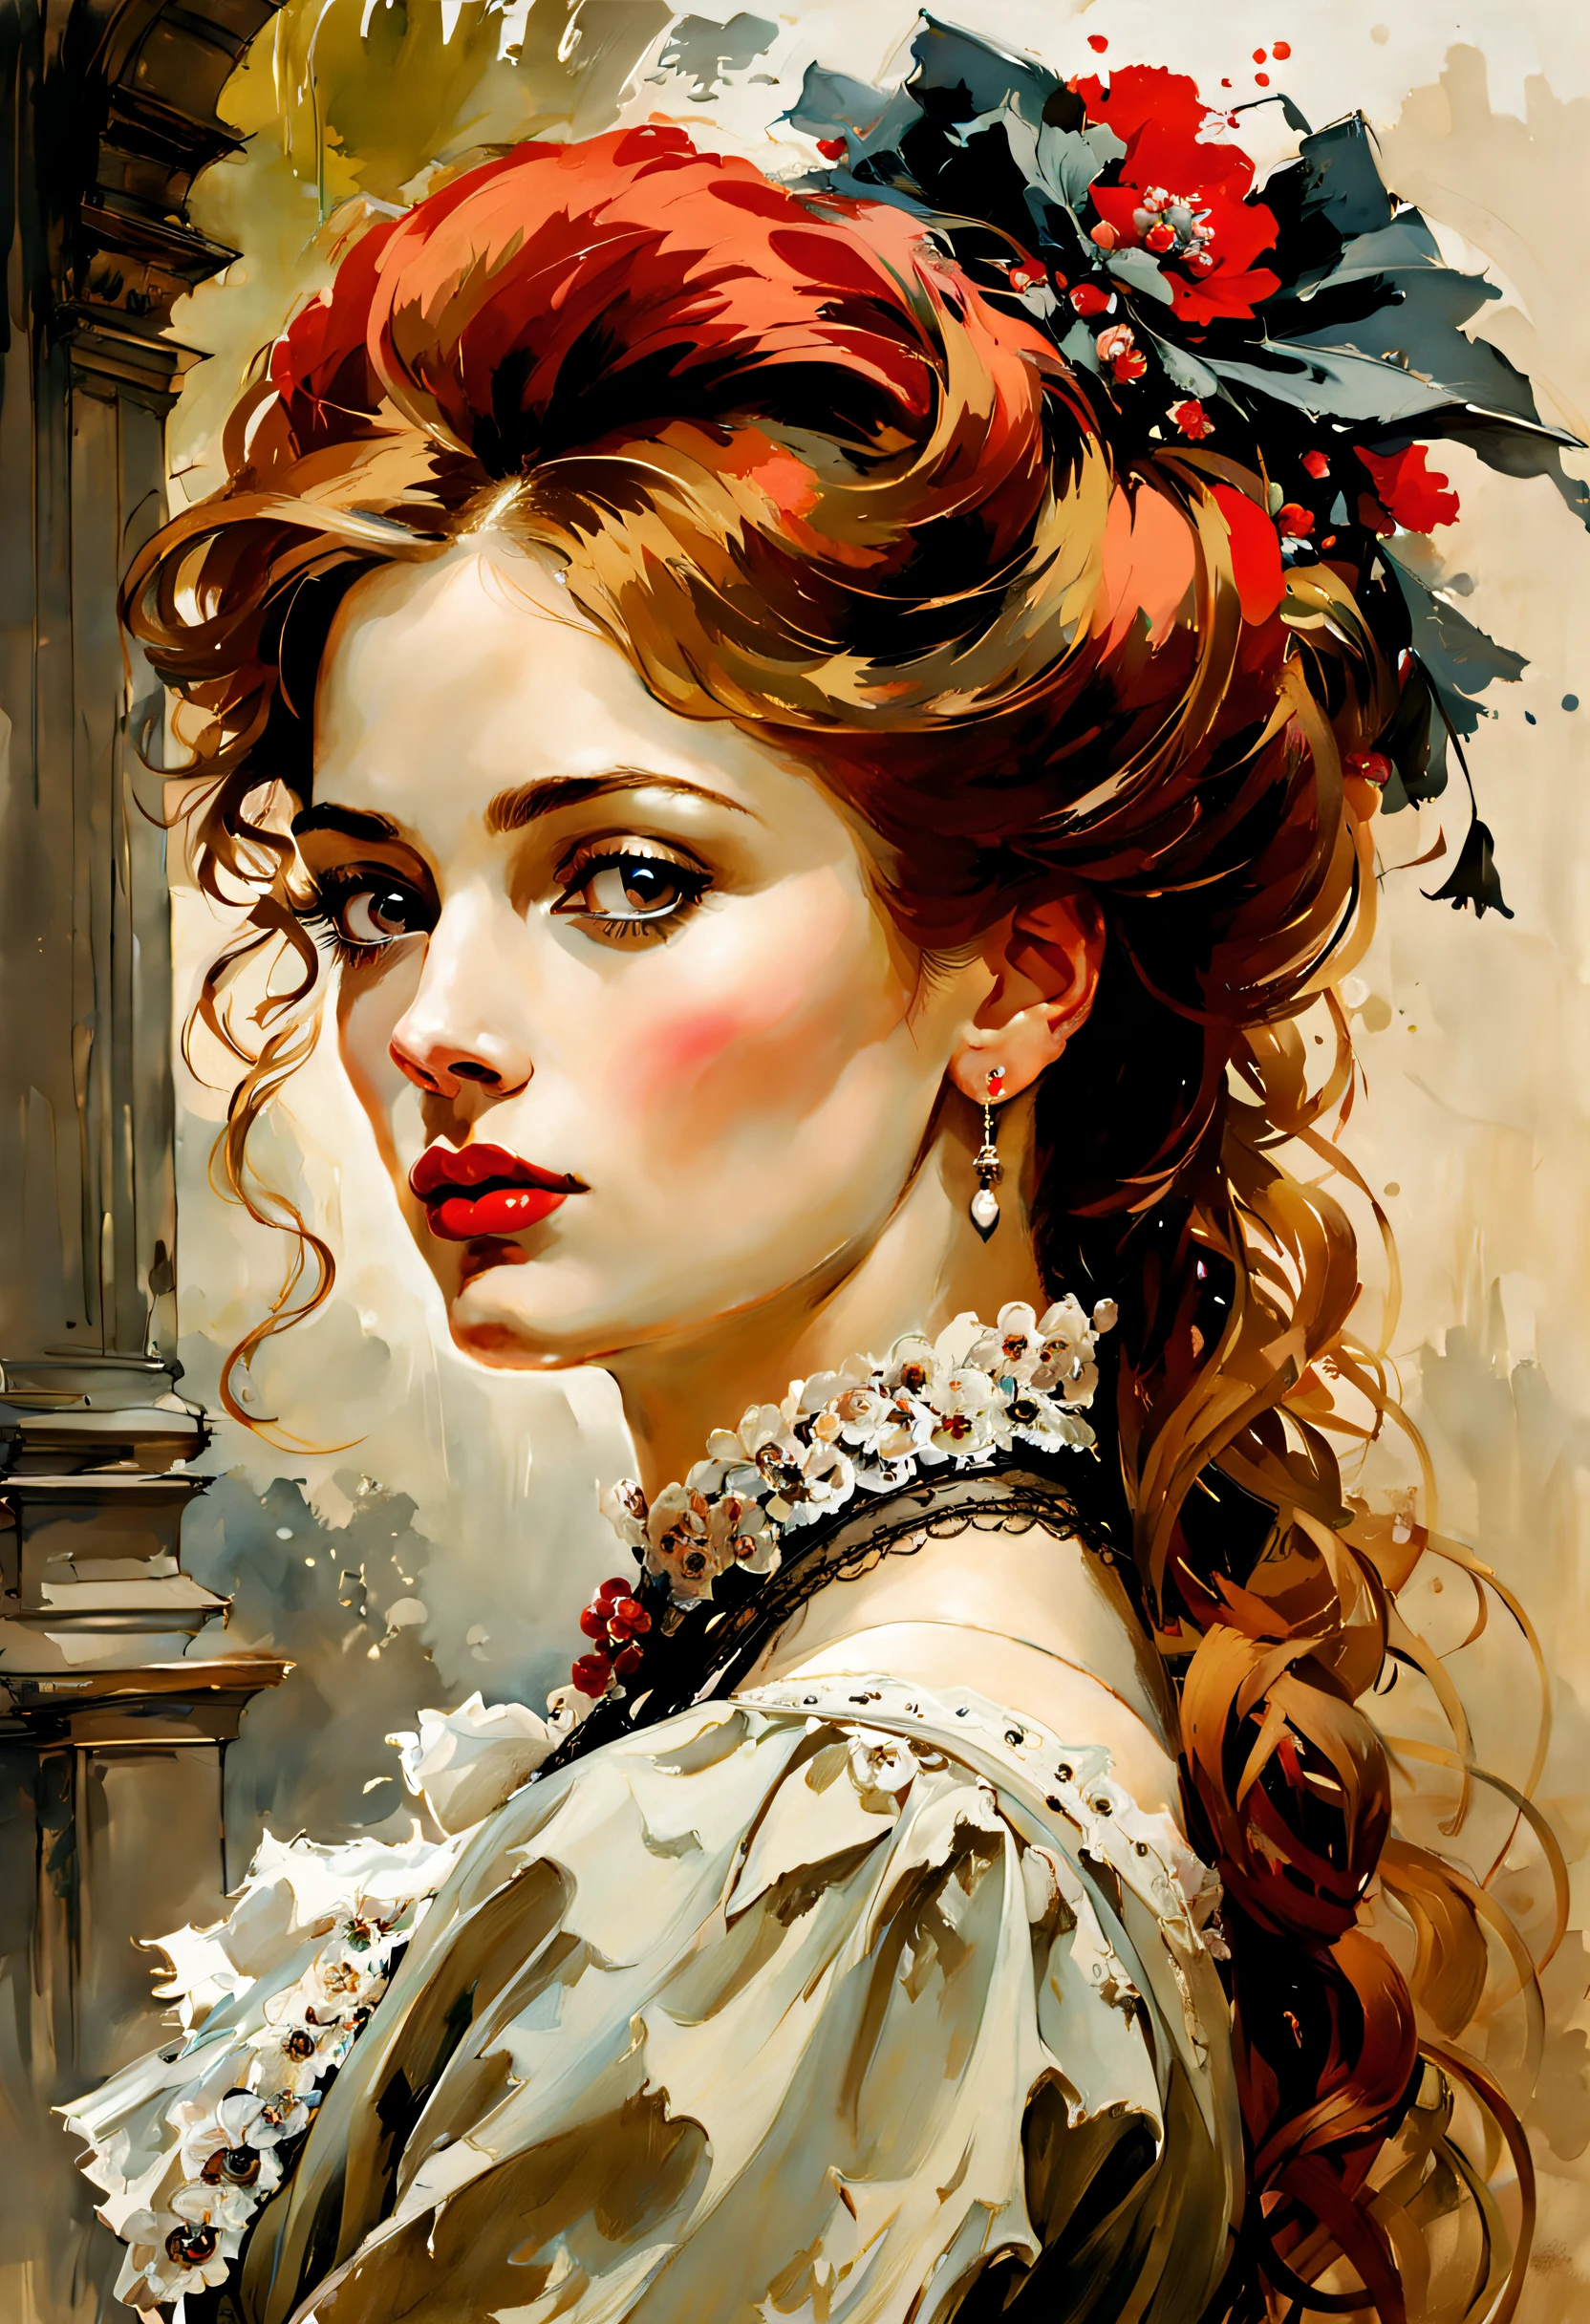 維多利亞時代的匈牙利女性 19 世紀的女性, 淡褐色頭髮, 紅唇, 不錯的功能, 瓦迪姆·卡辛, 詹姆斯·格尼, 墨水, 潑墨藝術", 惊人的美丽 , 羅約, 性別鑑定後, Super detailed splash art modern European 墨水 painting